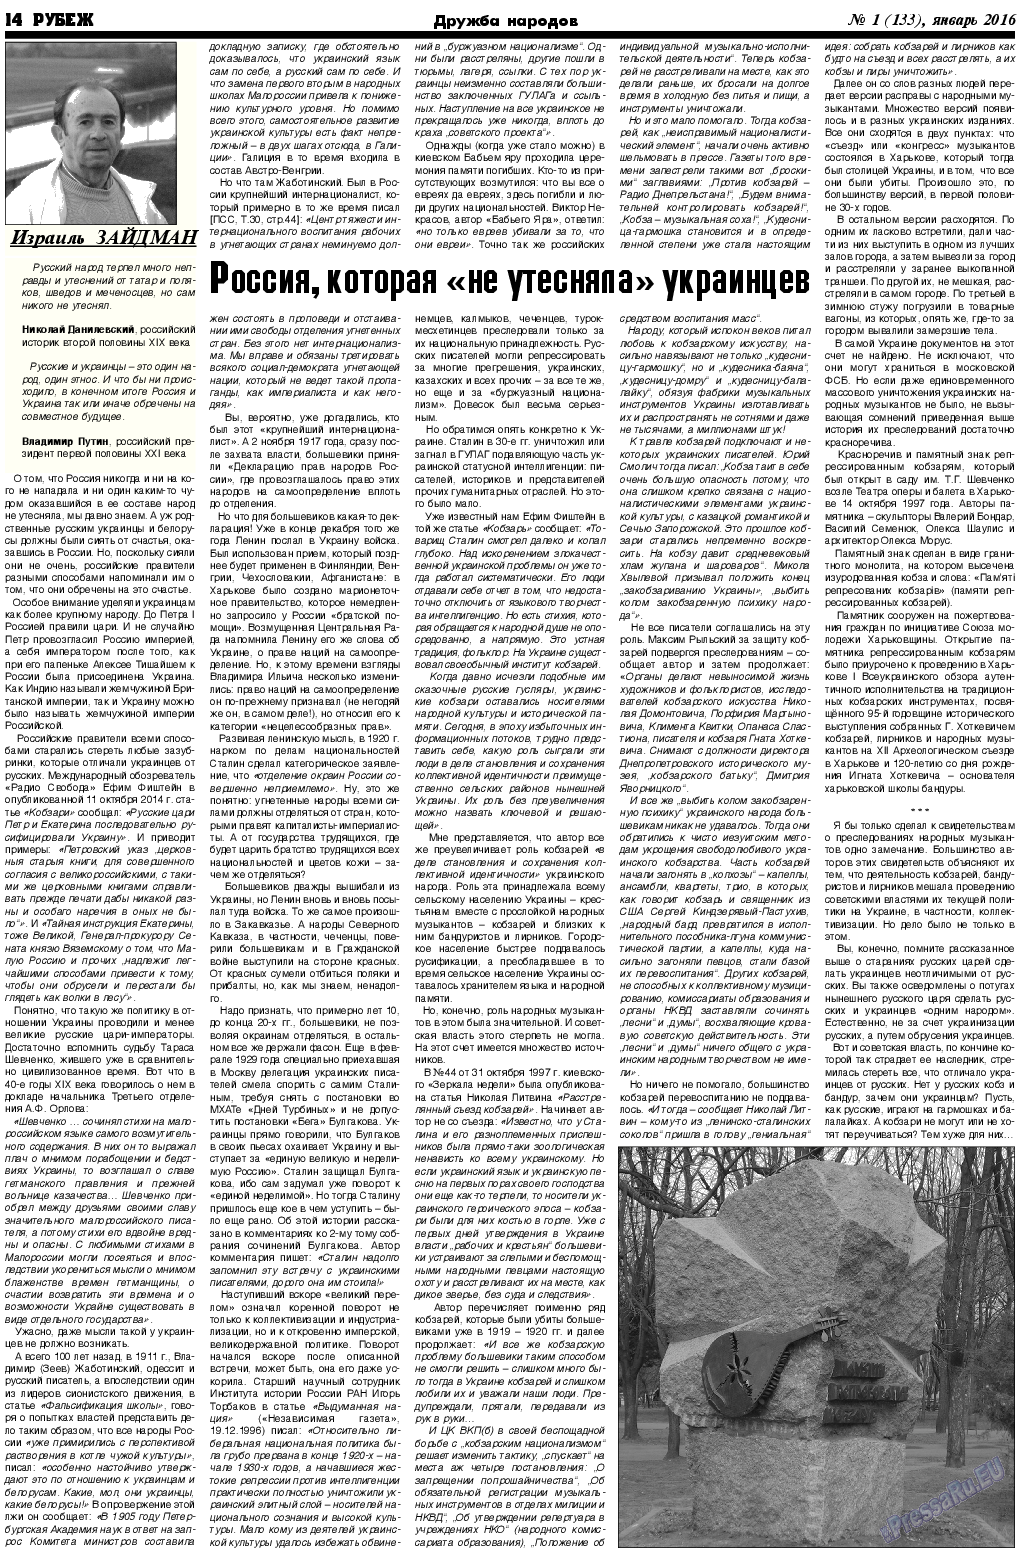 Рубеж (газета). 2016 год, номер 1, стр. 14